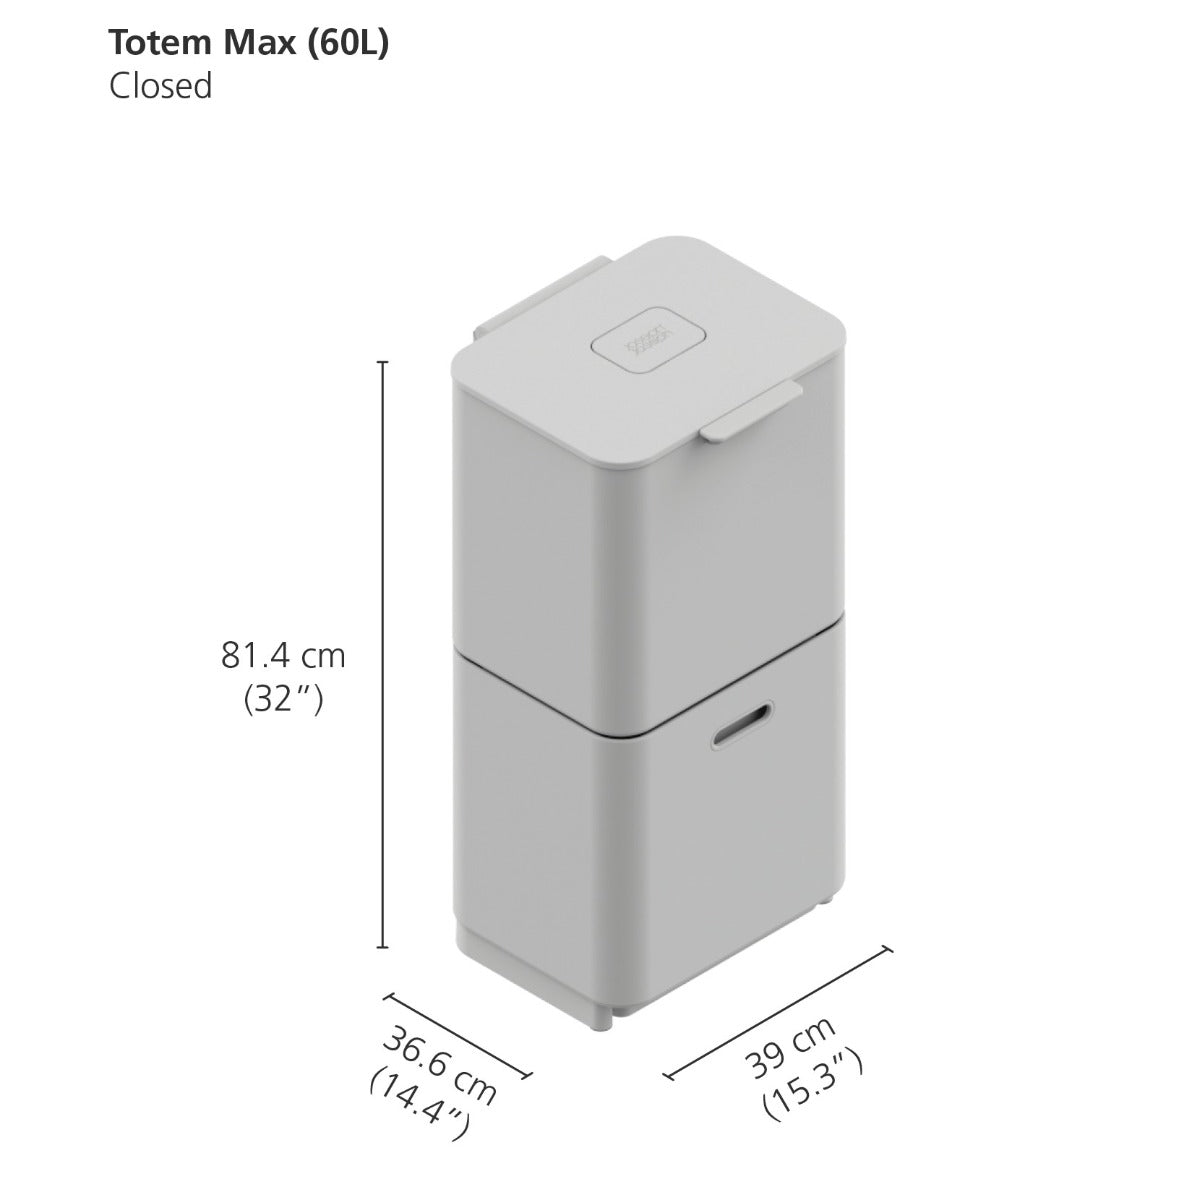 Joseph Joseph 3-Compartment Totem Max 60 Litre Kitchen Recycling Bin in carbon black 30106 dimensions when closed